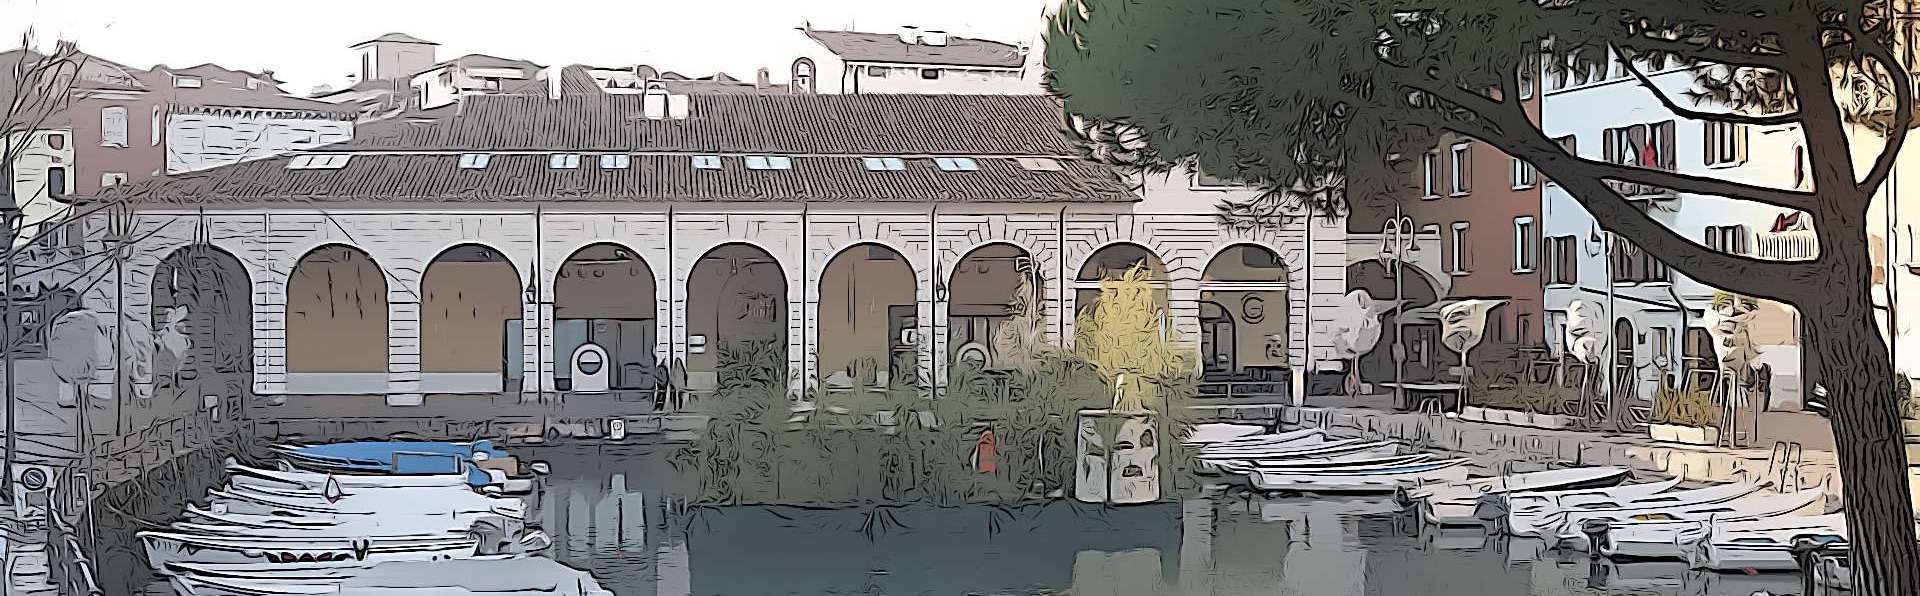 Desenzano del Garda | Palazzo Todeschini e Villa Brunati